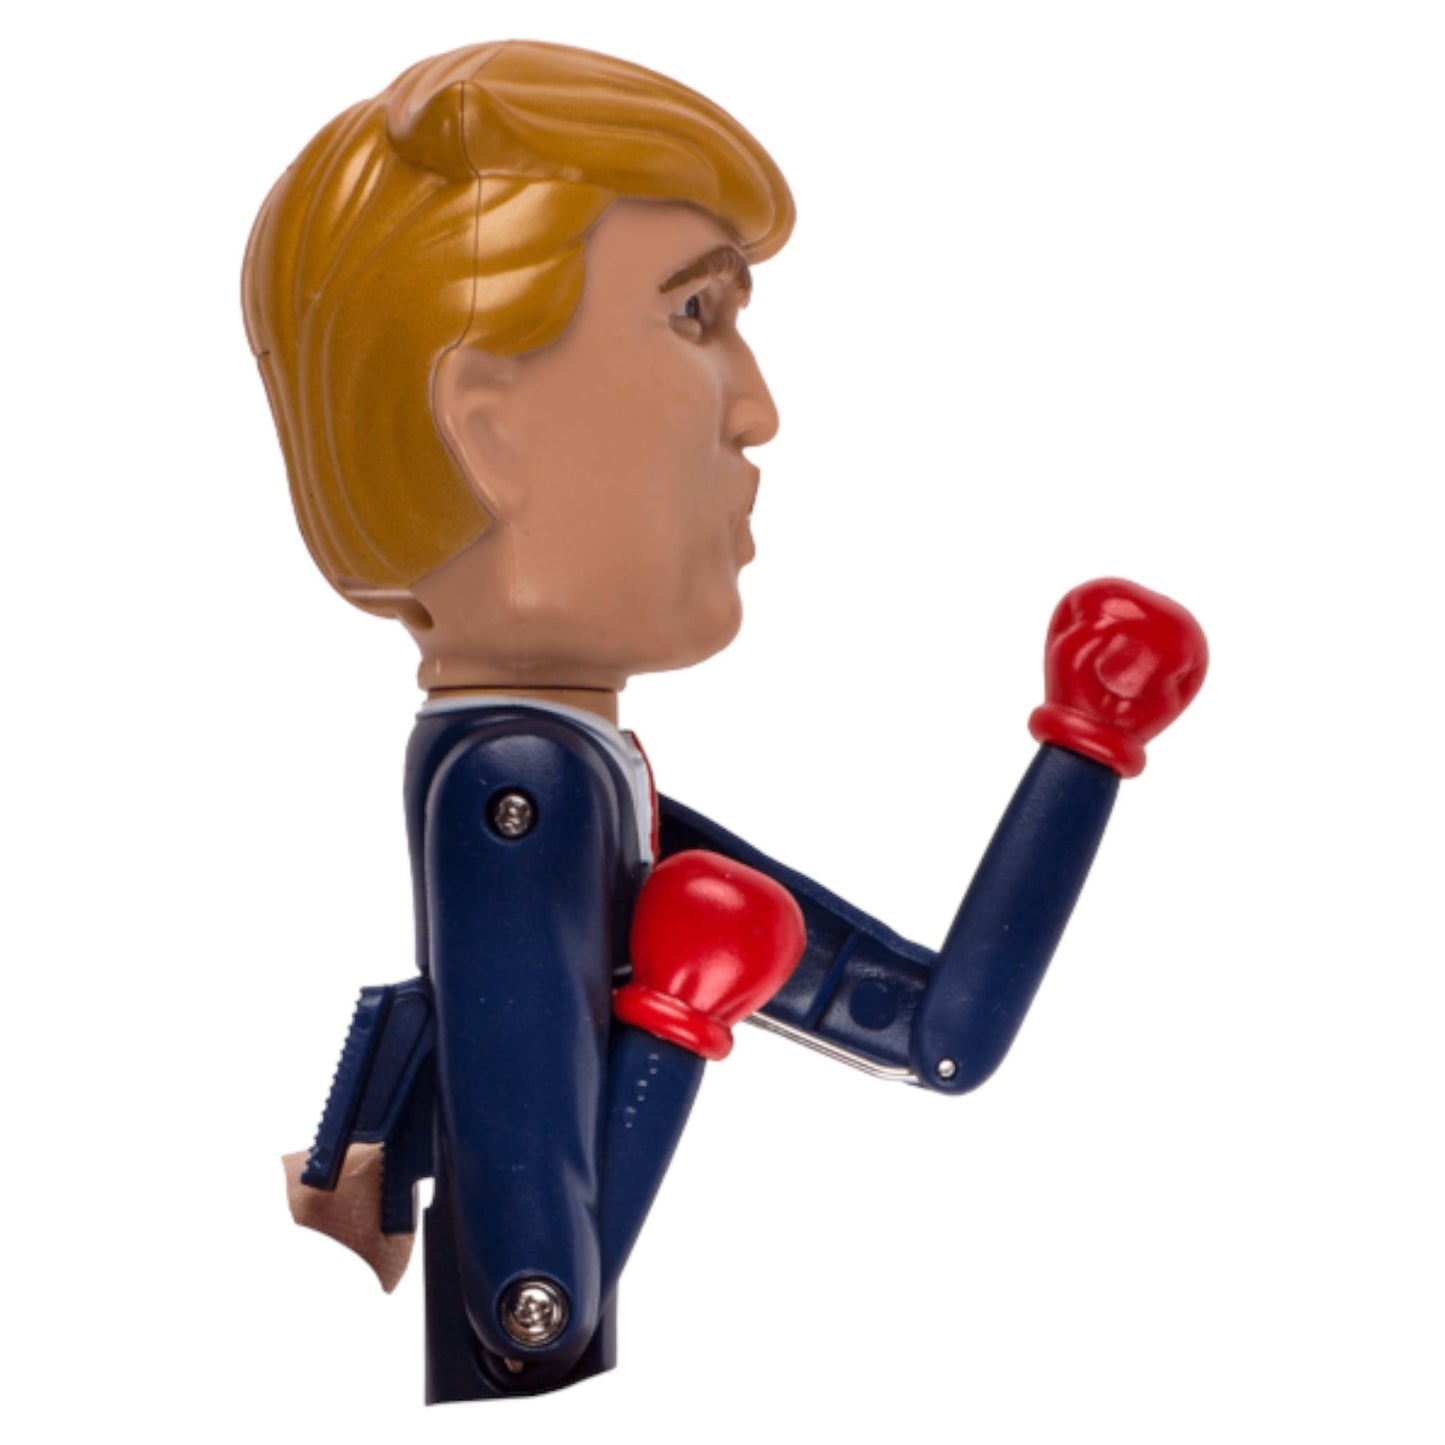 Donald Trump Boxing Pen - Uniek en Grappig Gadget voor Politieke Humor